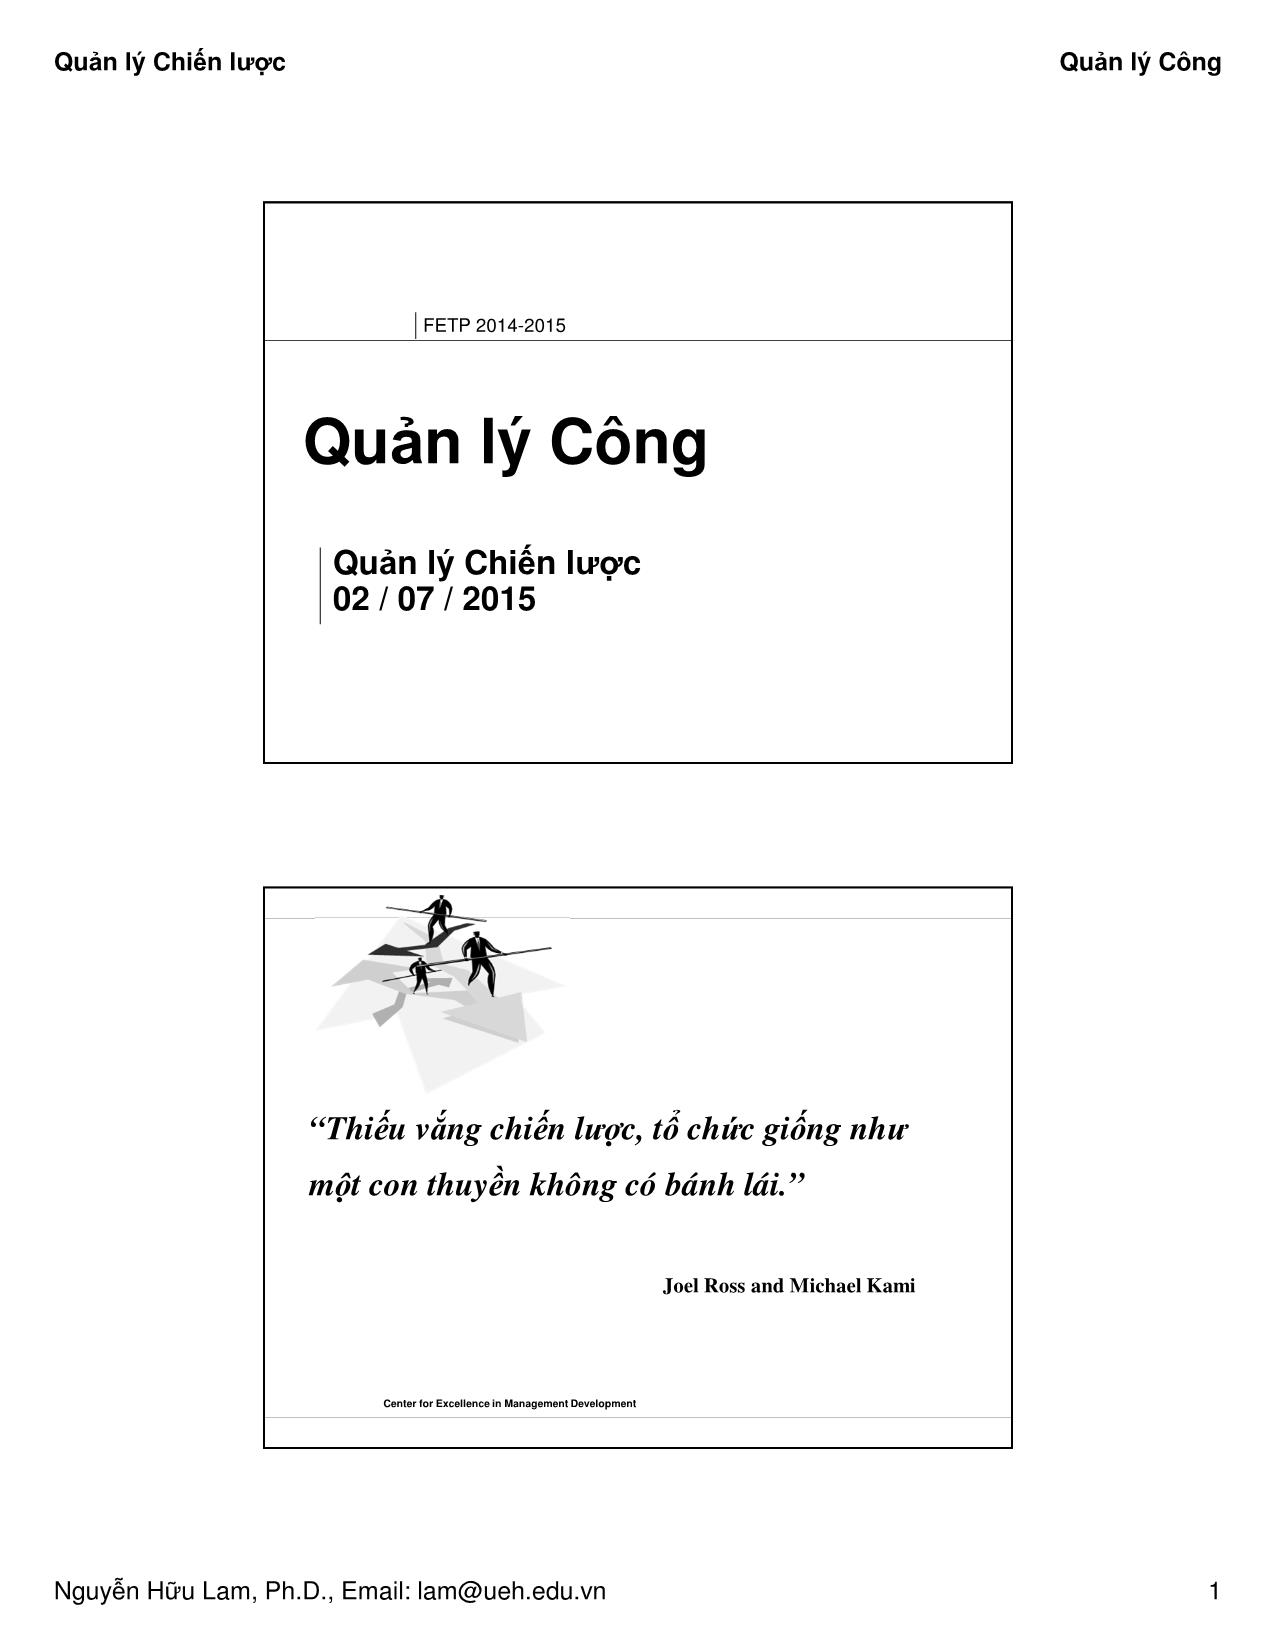 Bài giảng Quản lý công - Quản lý chiến lược - Nguyễn Hữu Lam trang 1